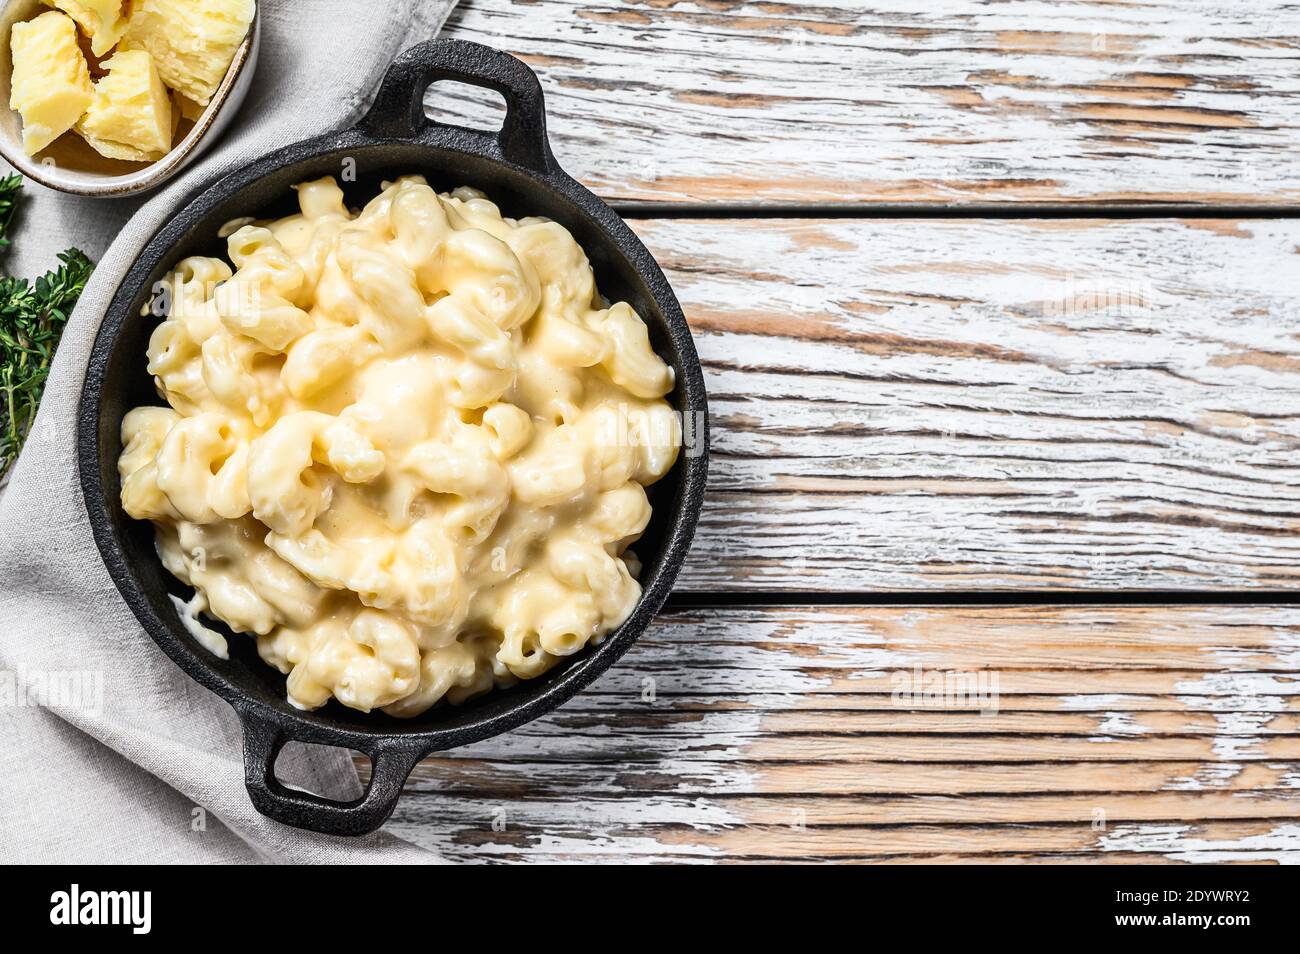 Mac and cheese, la auténtica receta de los macarrones con queso americanos